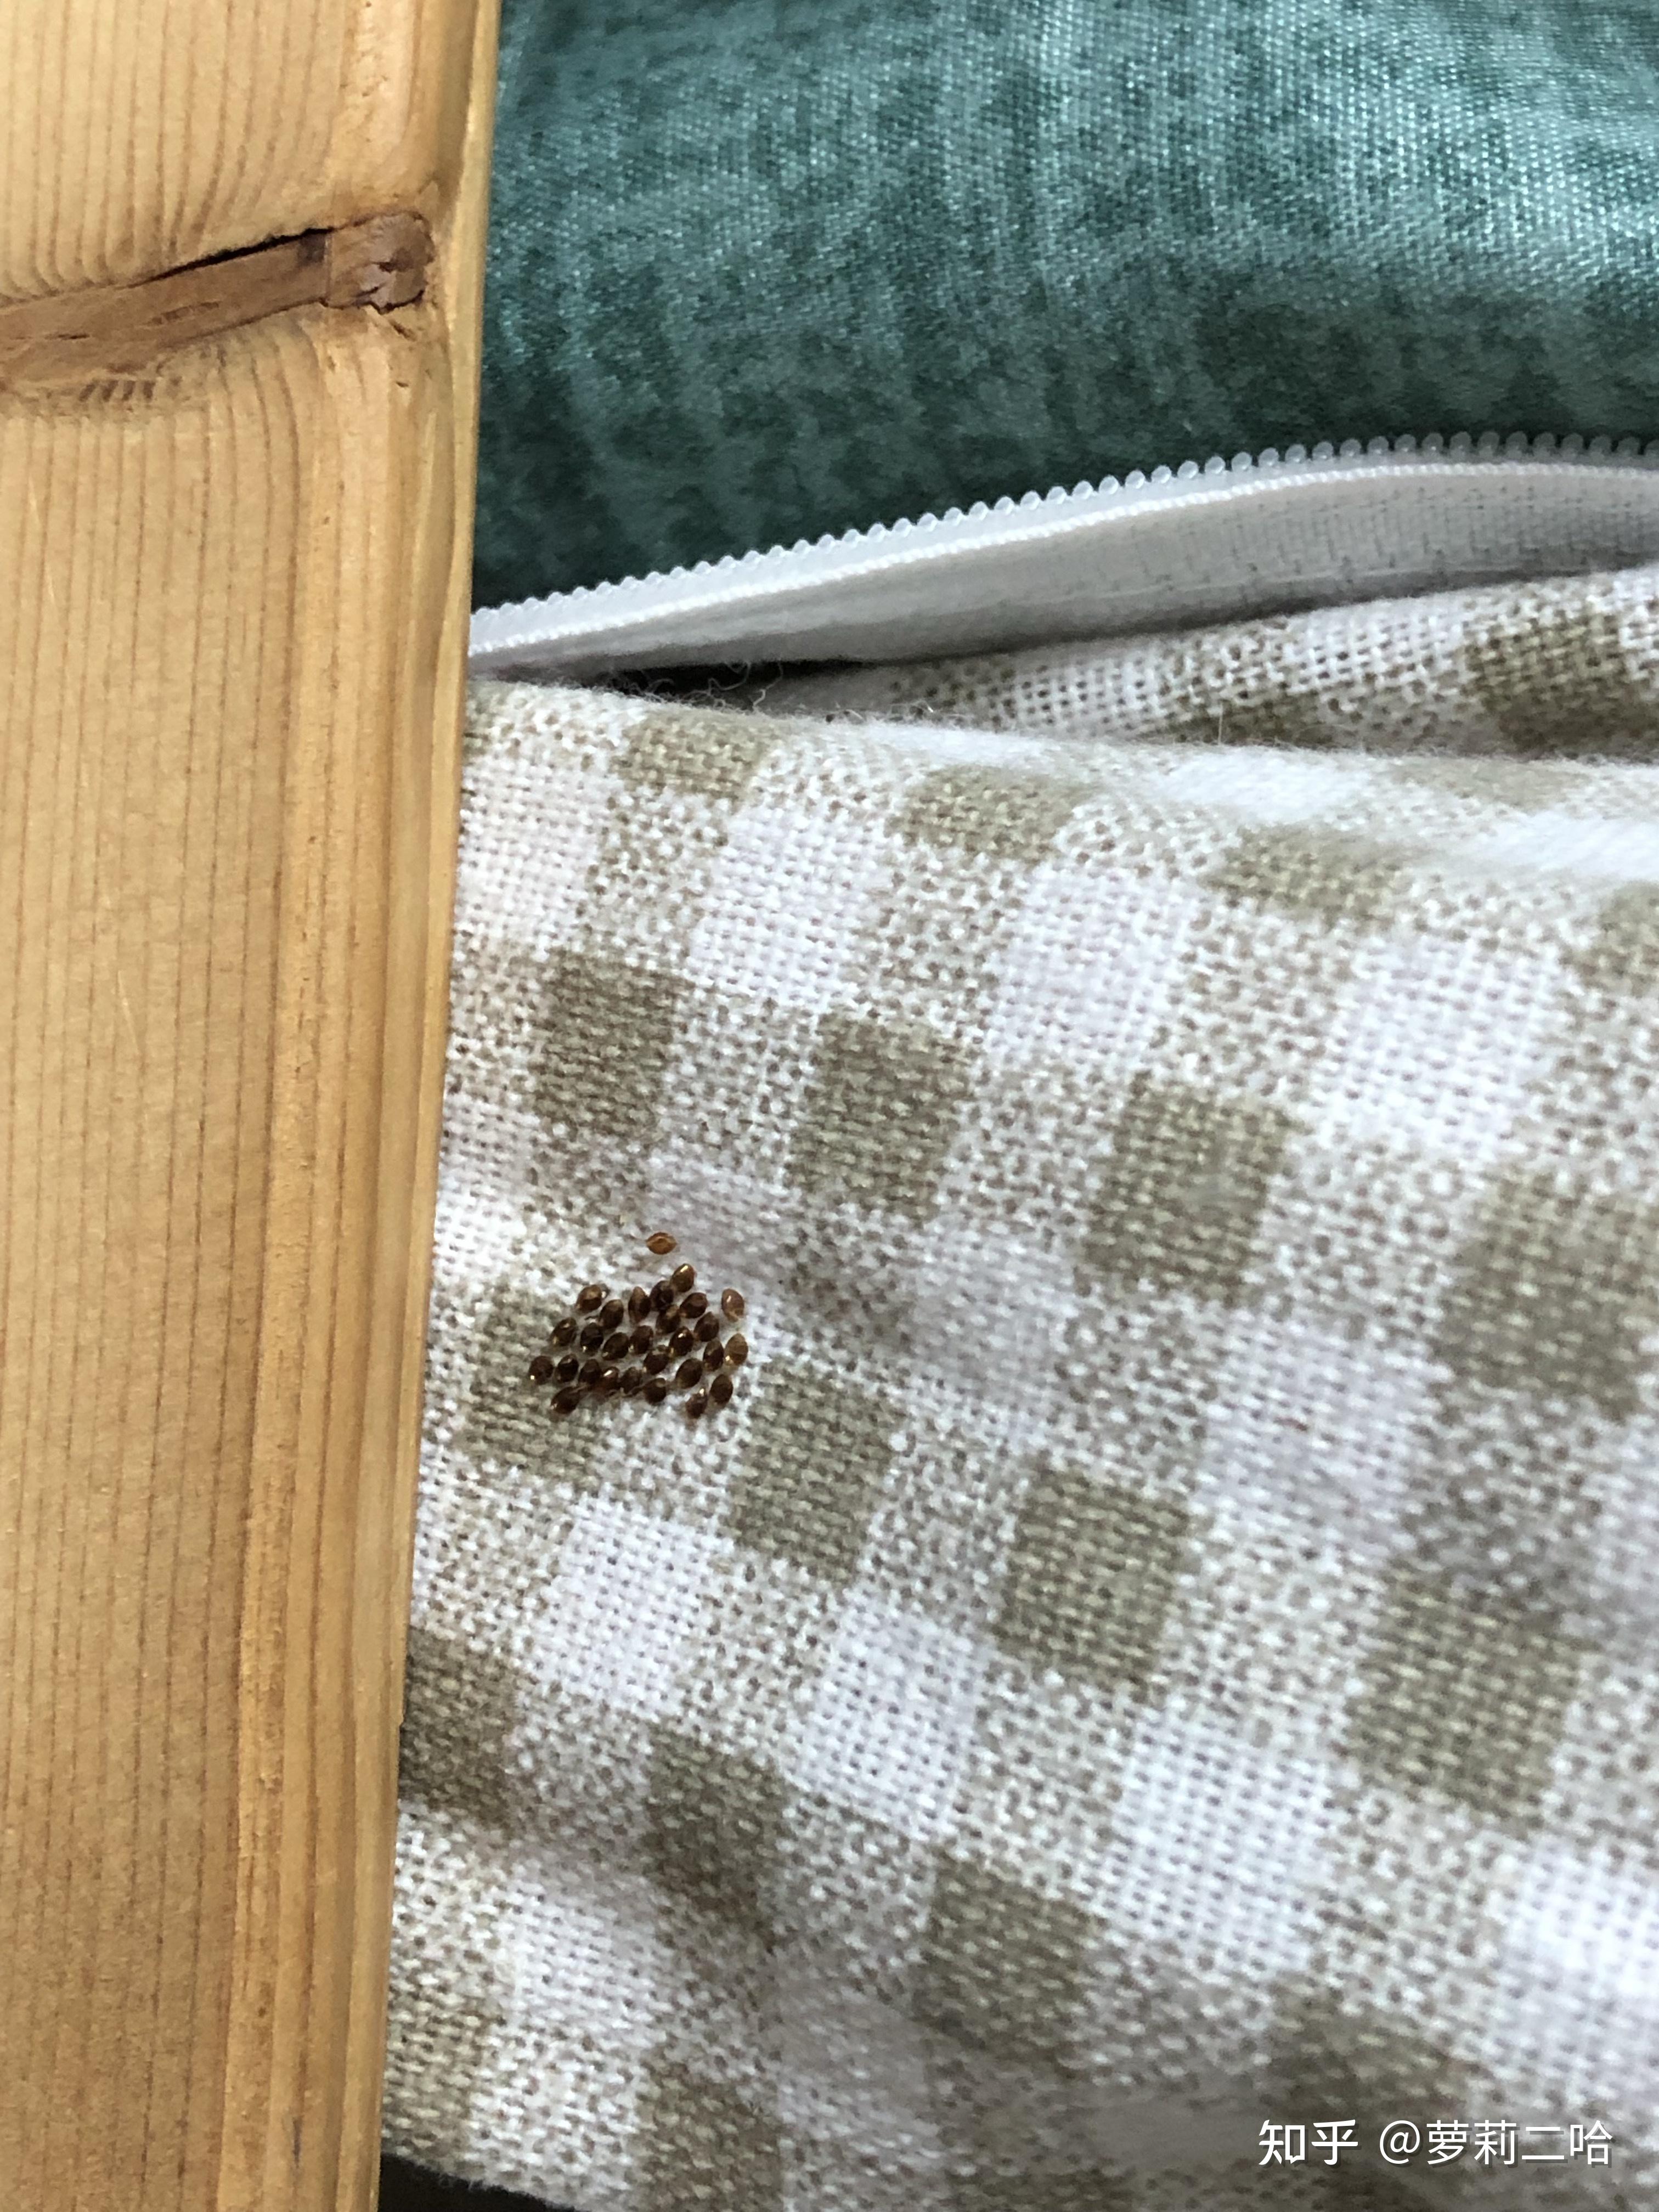 床上发现了非常小的虫卵样的东西,这到底是什么呀? 